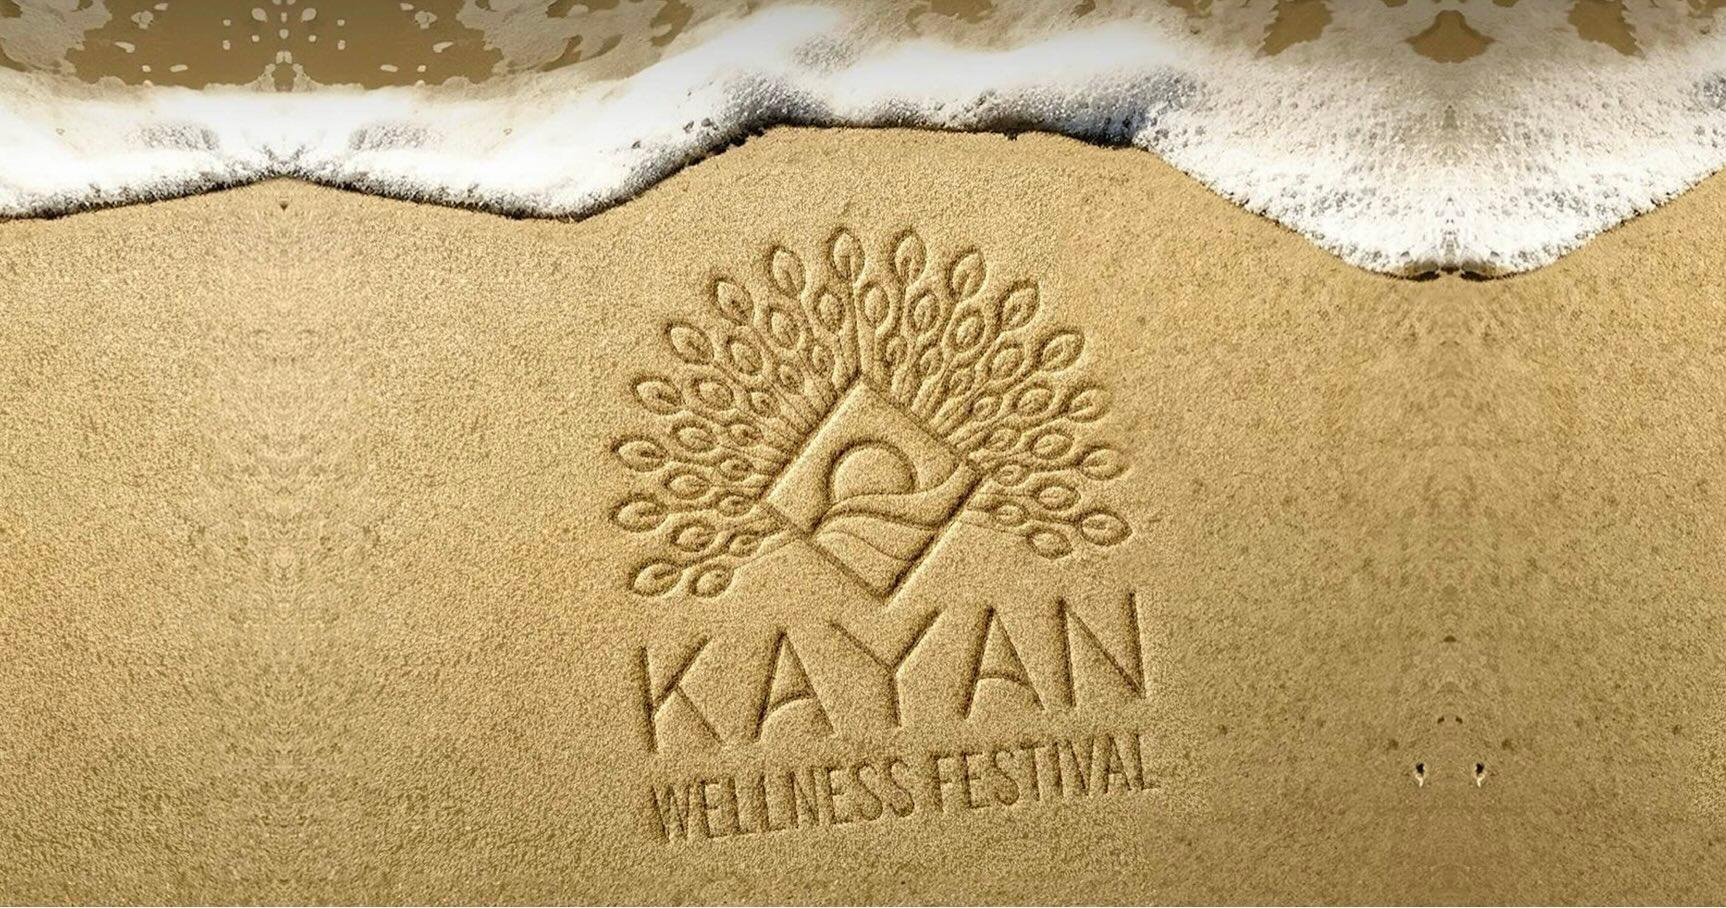 Kayan Wellness Festival has been cancelled